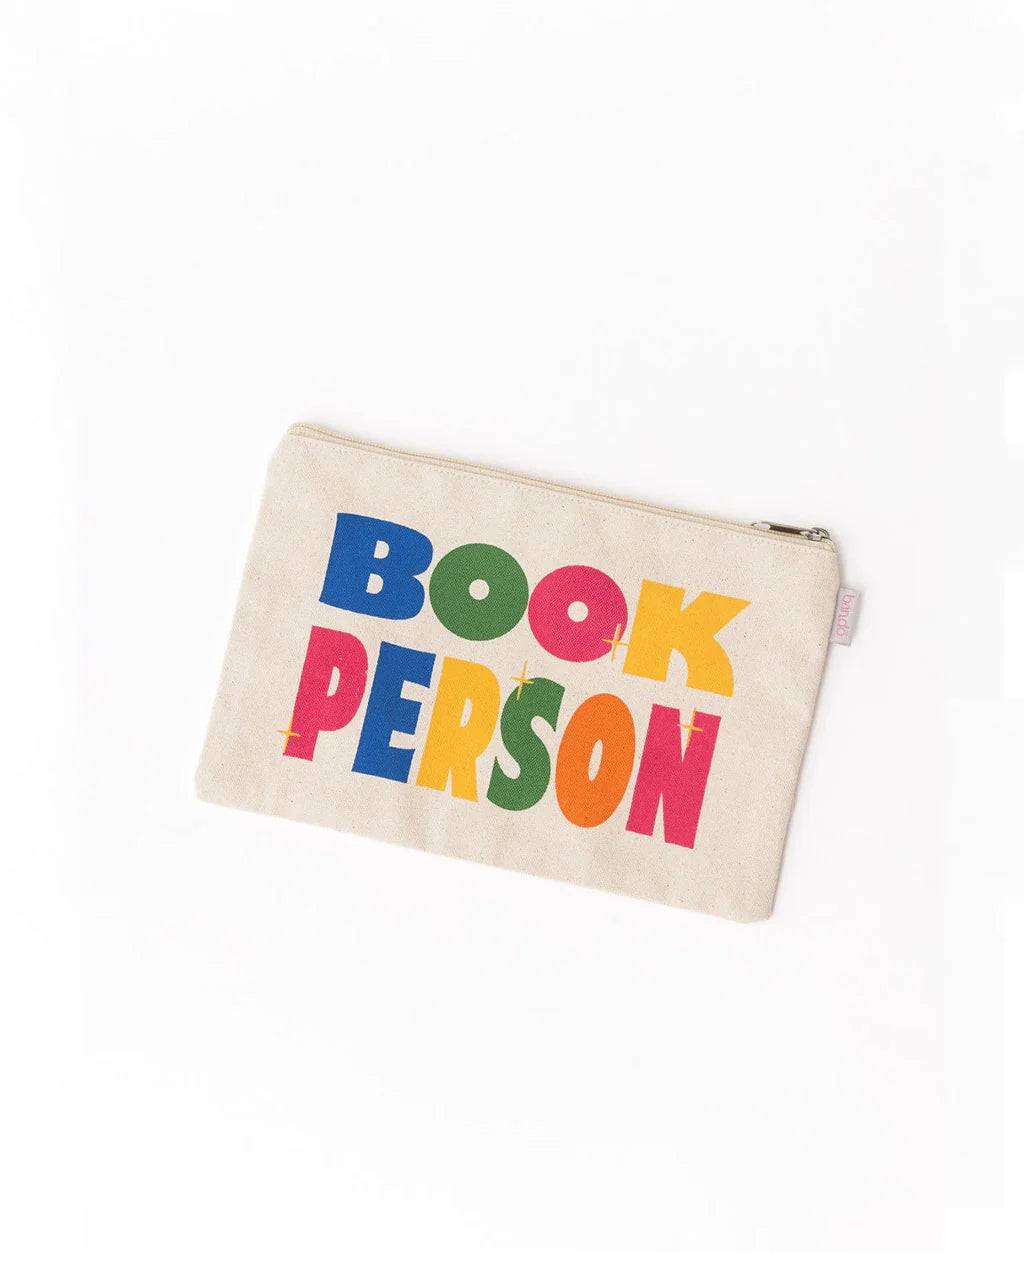 Canvas Pouch - Book Person [PRE ORDER]